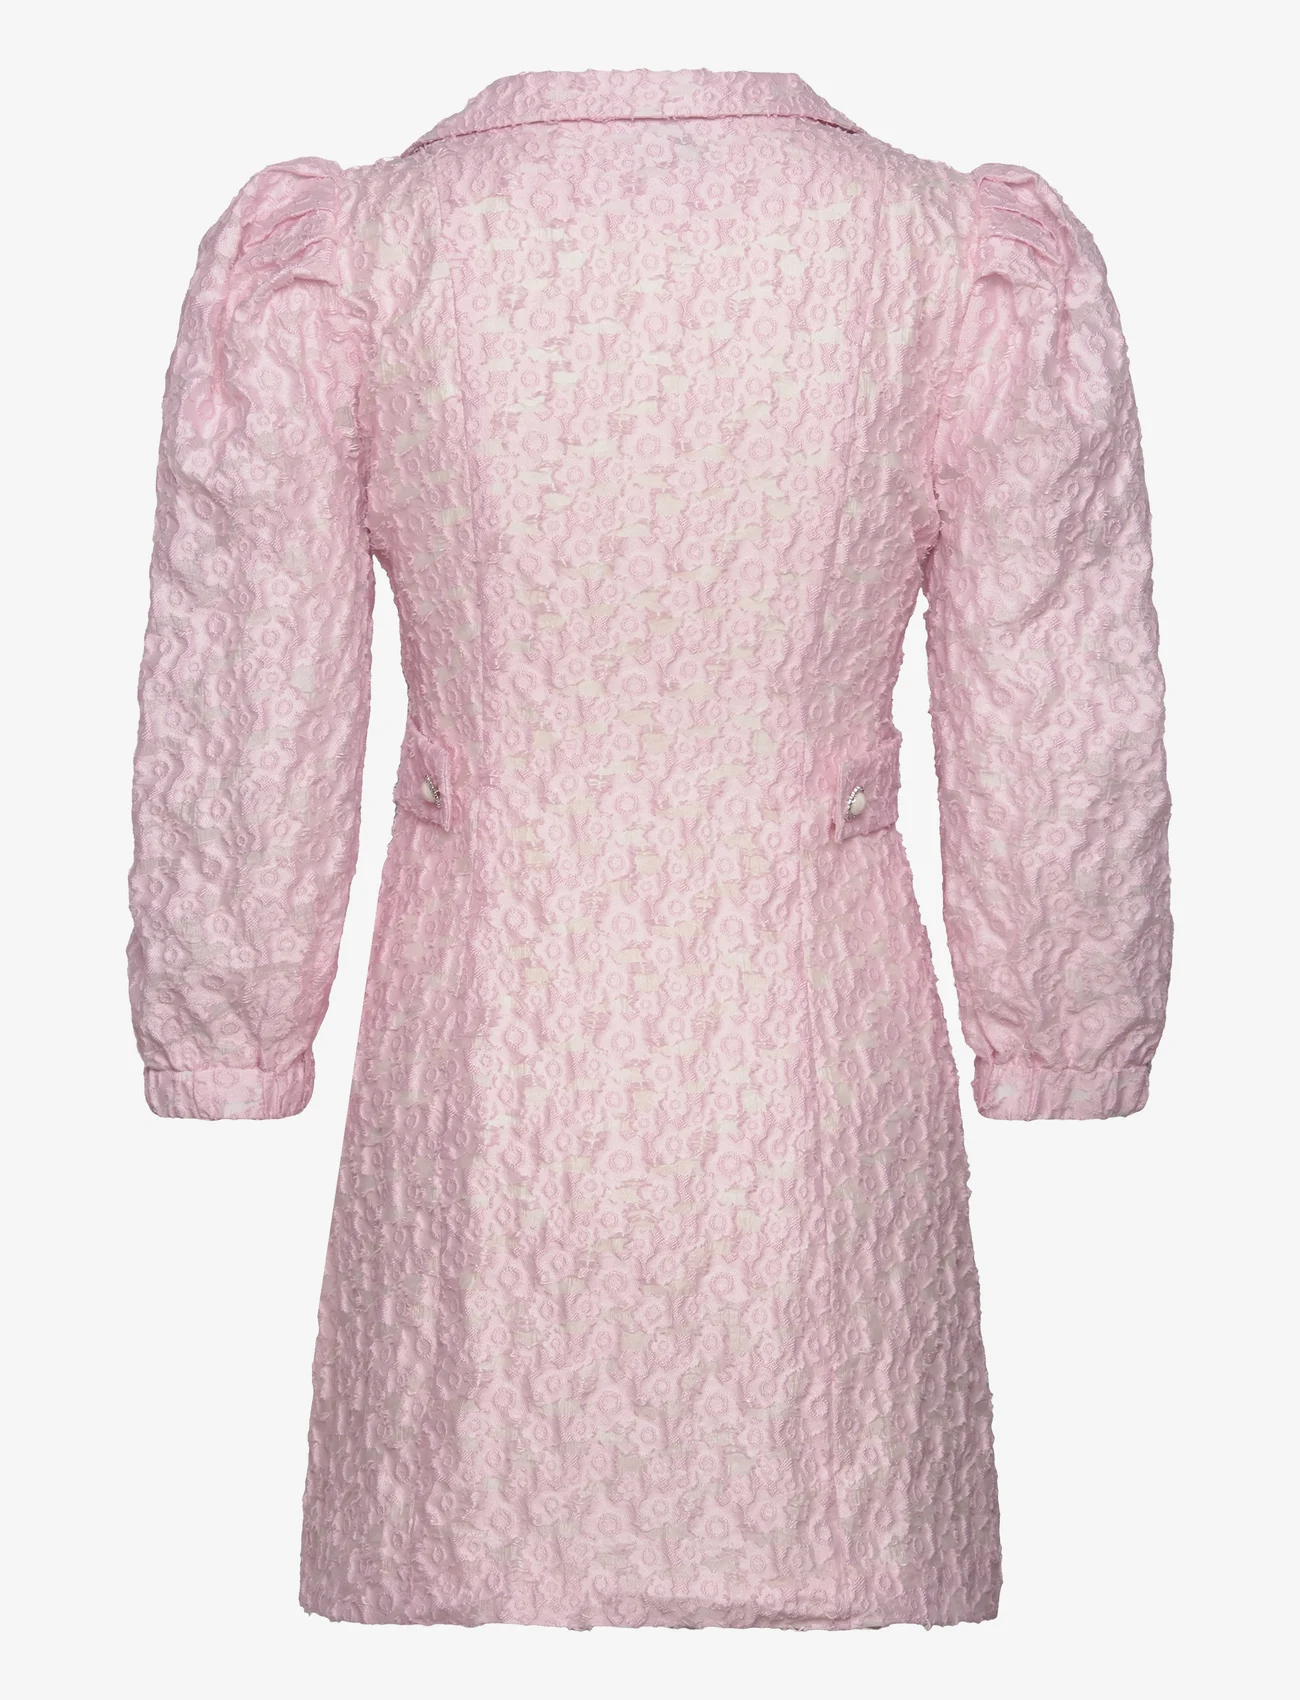 MAUD - Talia Blazer Dress - festtøj til outletpriser - light pink - 1